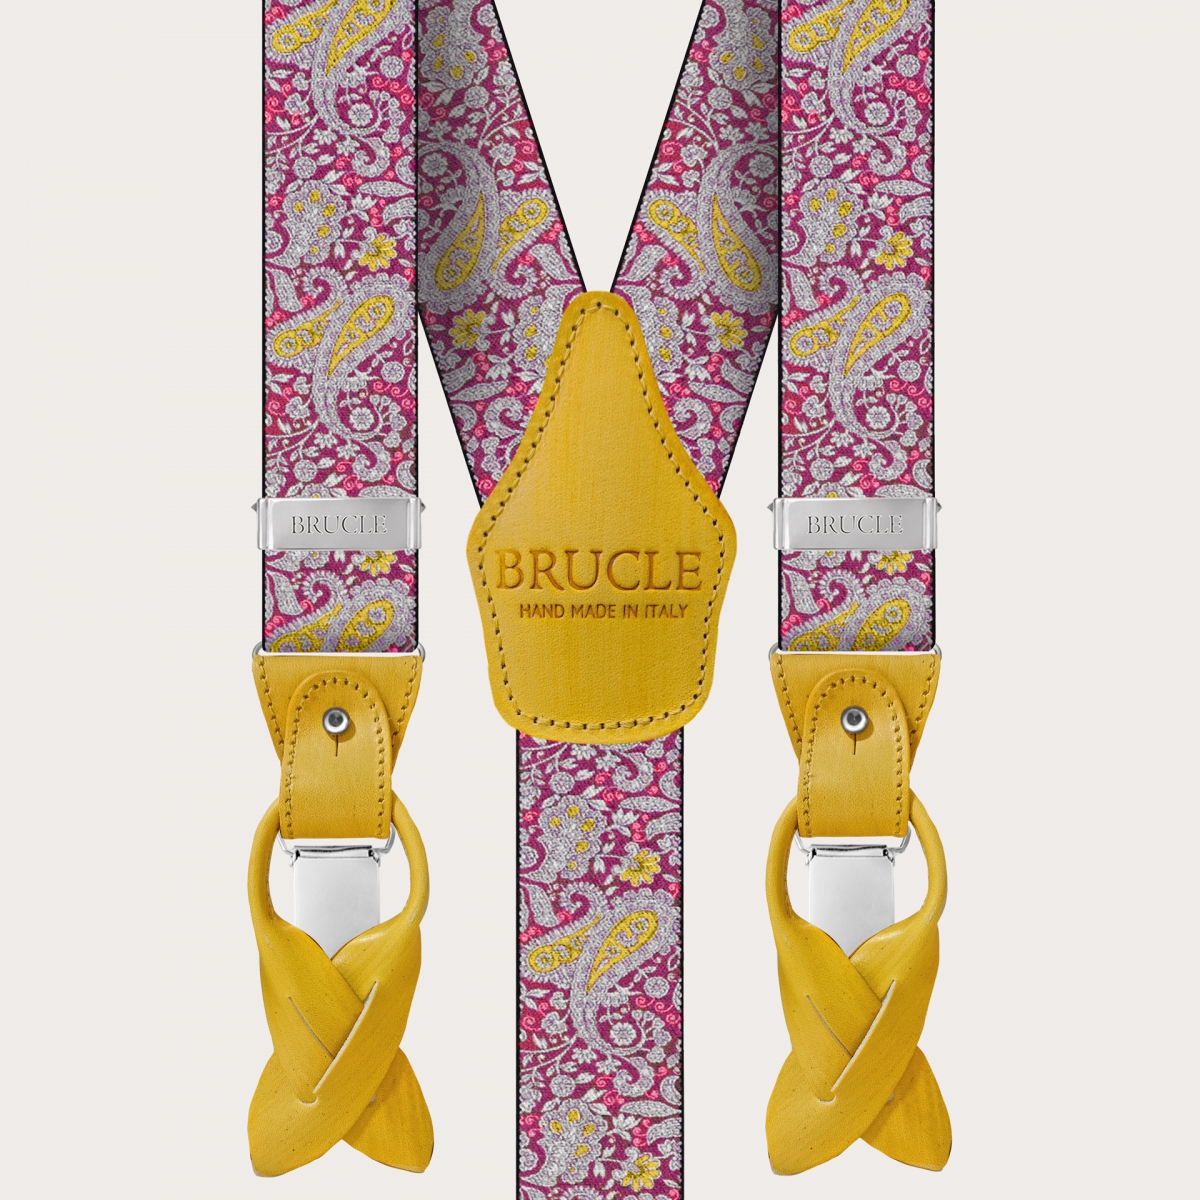 BRUCLE Bretelles double usage en motif cachemire magenta et jaune